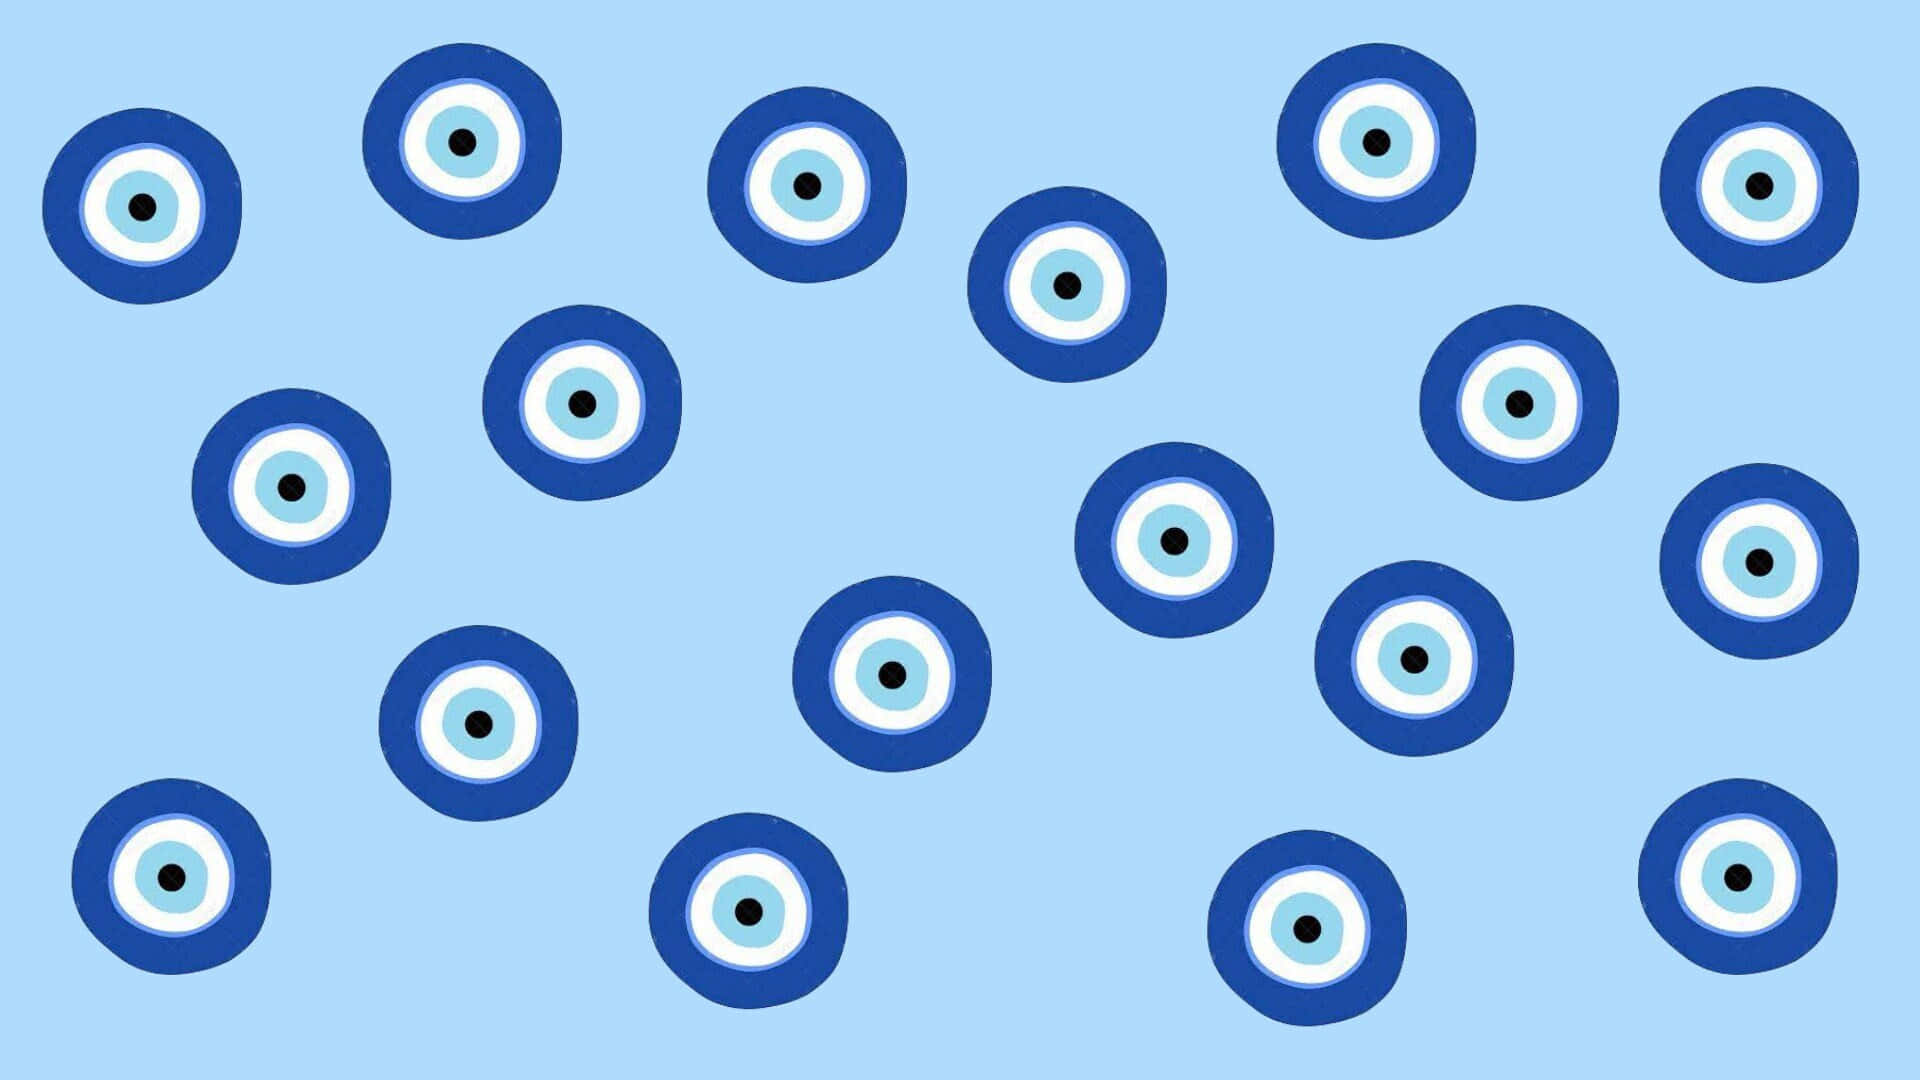 Evil Eye Pattern On A Blue Background